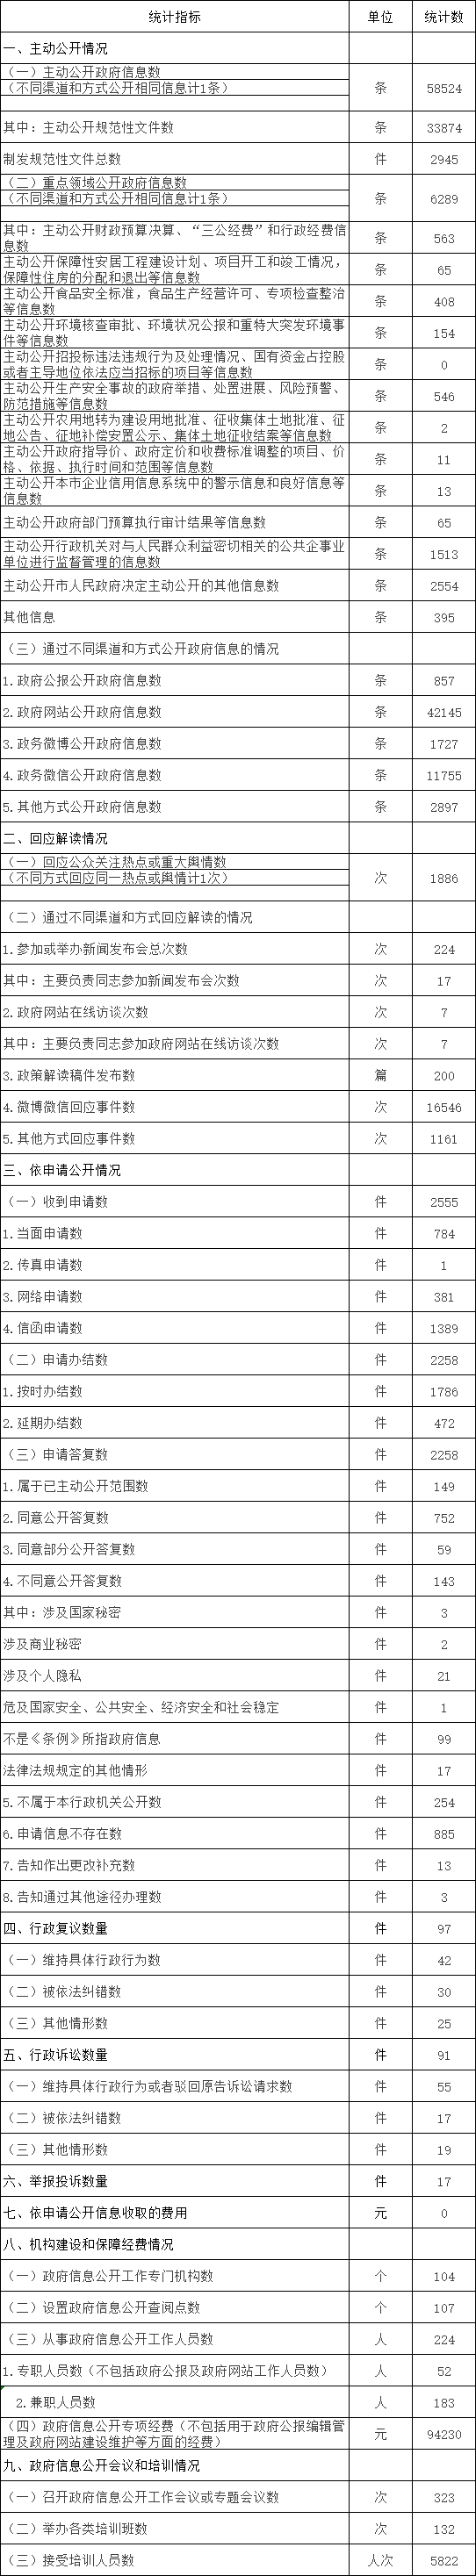 北京市朝阳区人民政府信息公开情况统计表(2017年度)